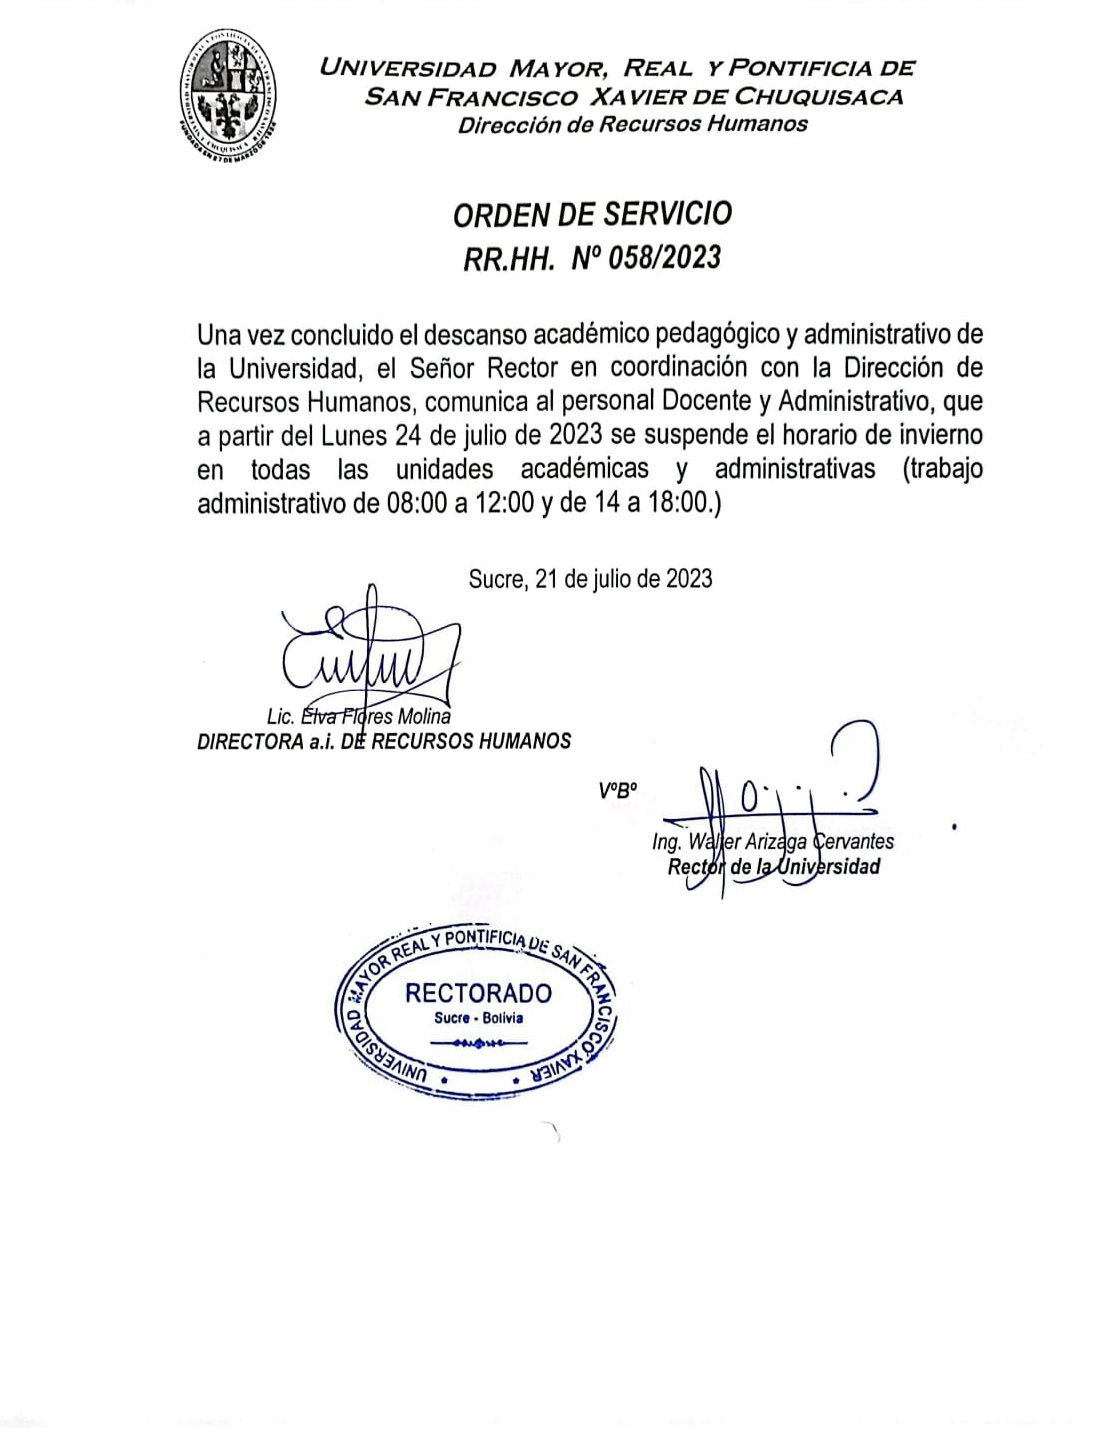 ORDEN DE SERVICIO RR.HH. Nº 058/2023 CONCLUSIÓN DESCANSO ACADÉMICO ADMINISTRATIVO 2023.